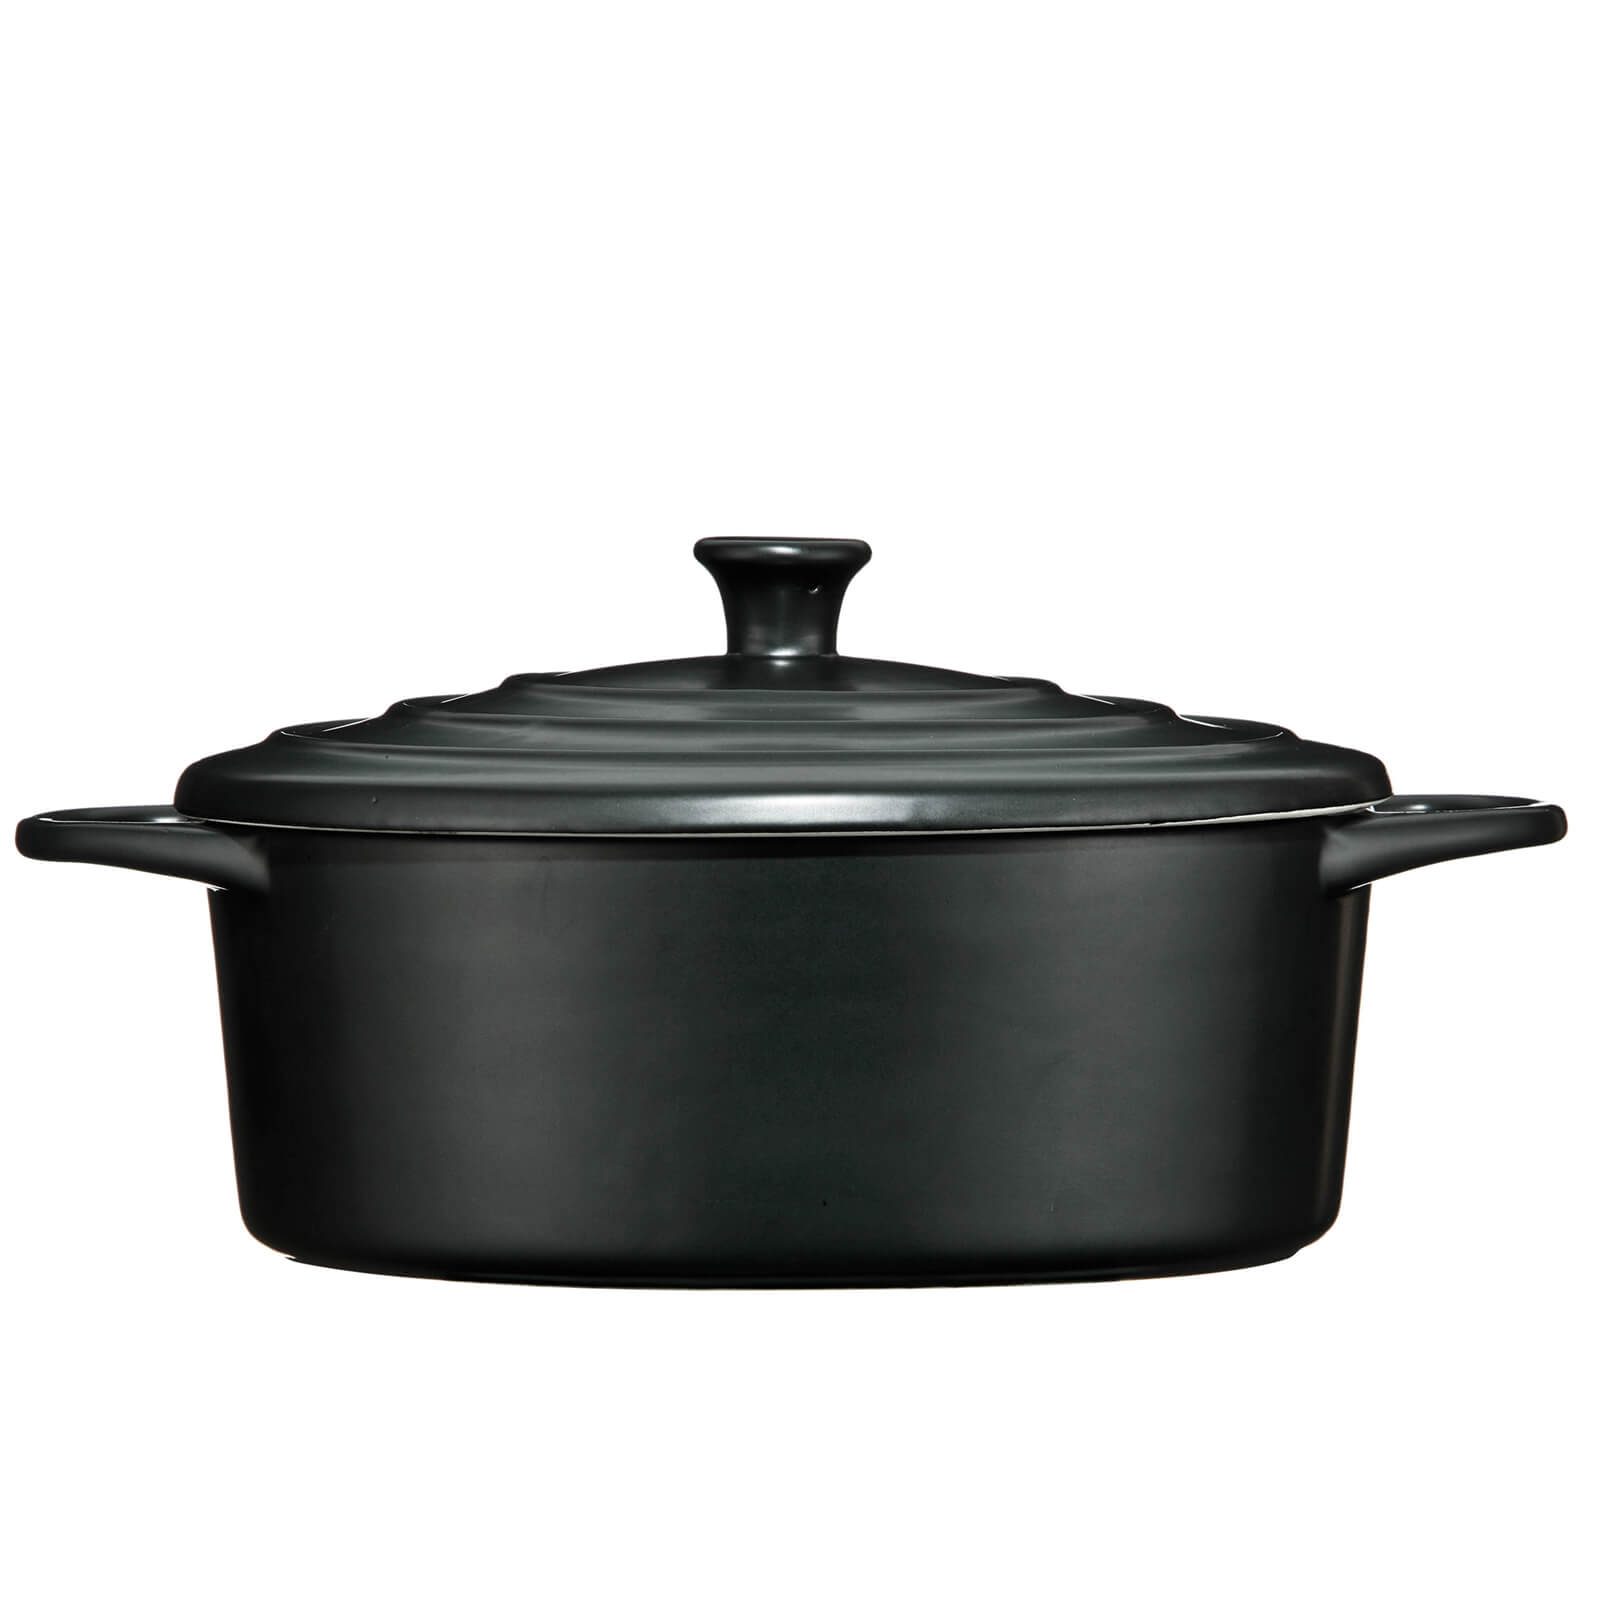 Ovenlove Casserole Dish - 2.5L - Black